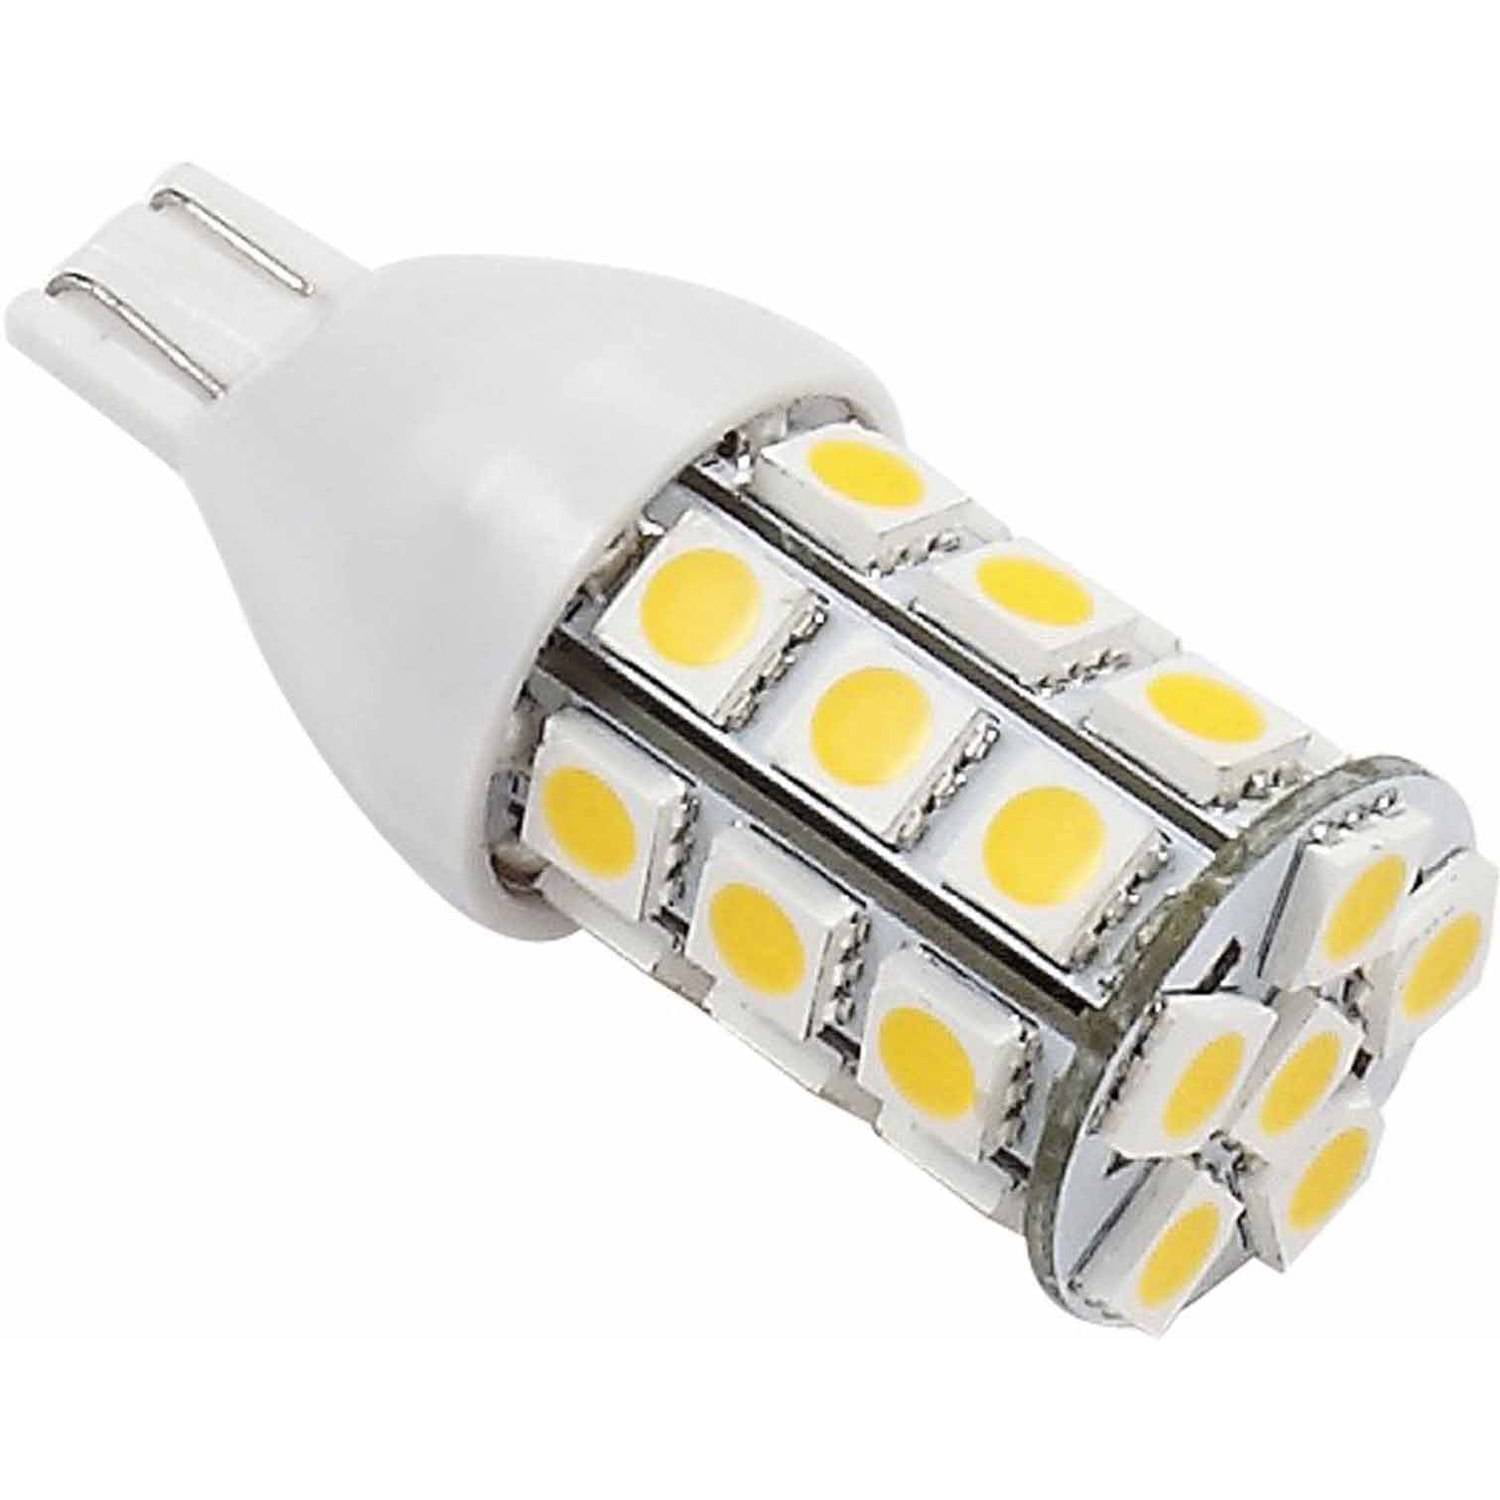 921/T15 Wedge base 120 Lumens 12v or 24v Gold Stars 92111802 Natural White LED Replacement Light Bulb 